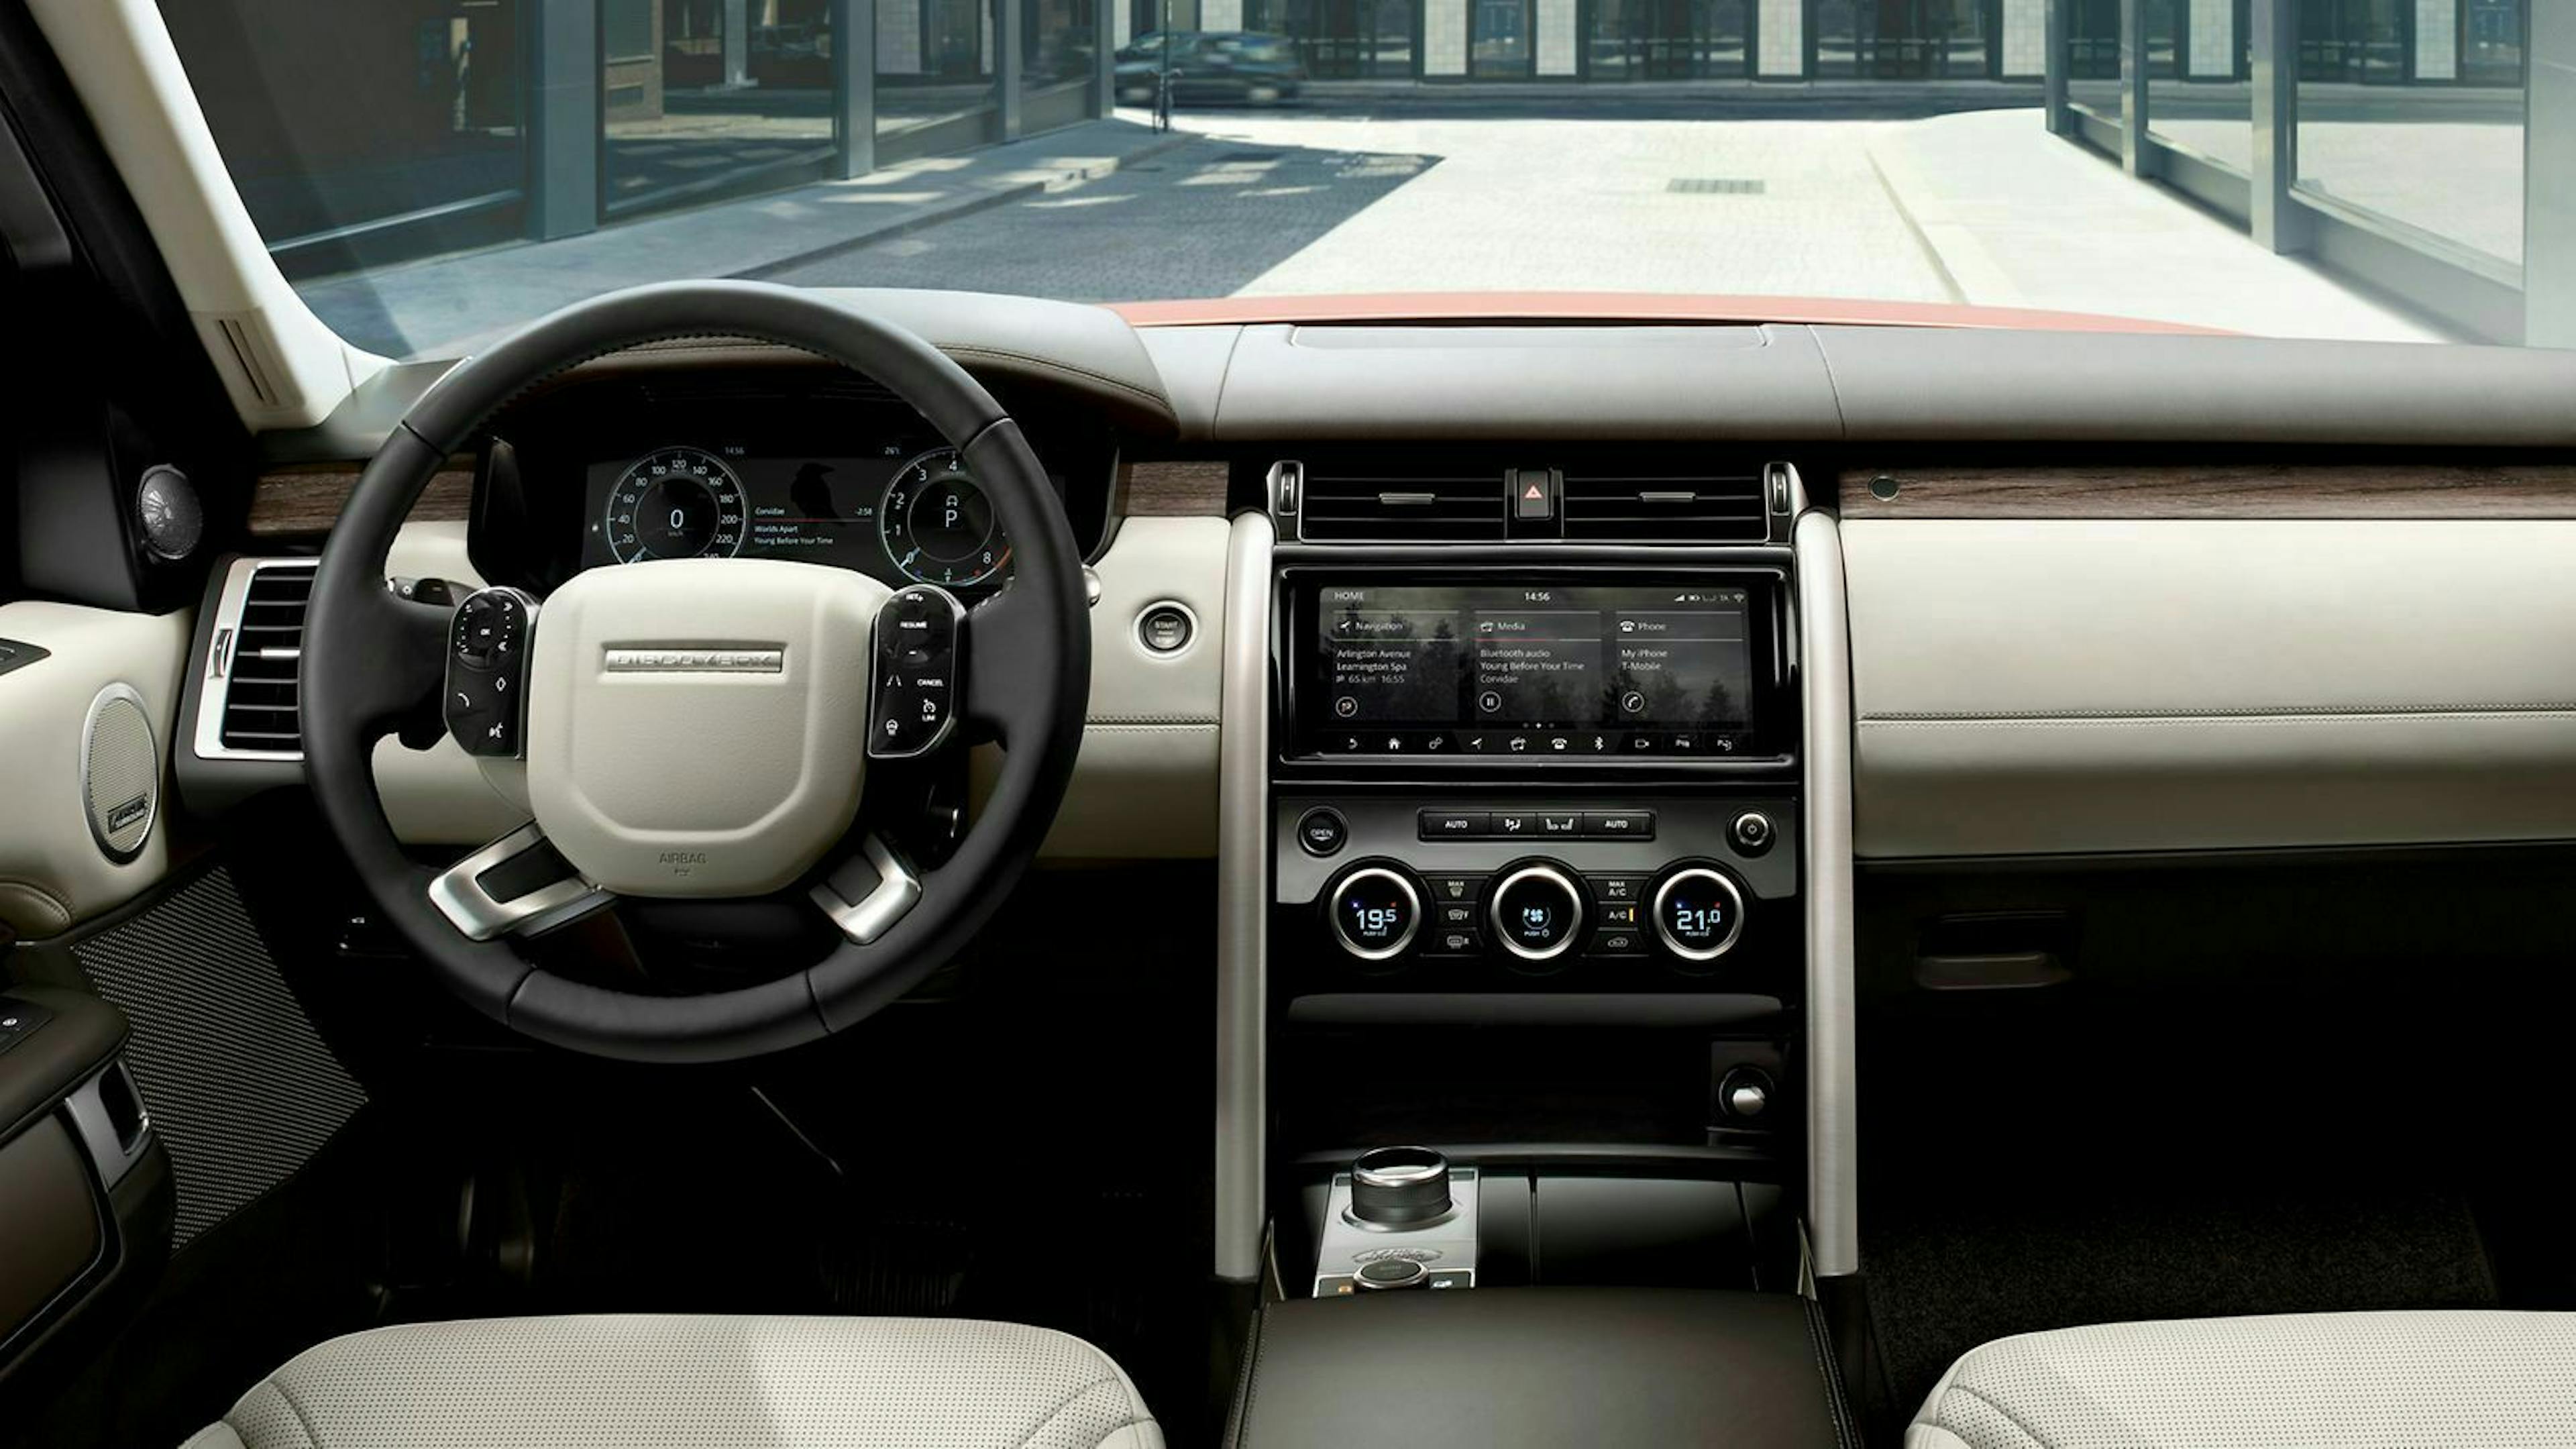 Der 4G Wifi-Hotspot des Land Rover Discovery erlaubt einem endloses Streamen seiner Lieblings-Songs- oder Serien